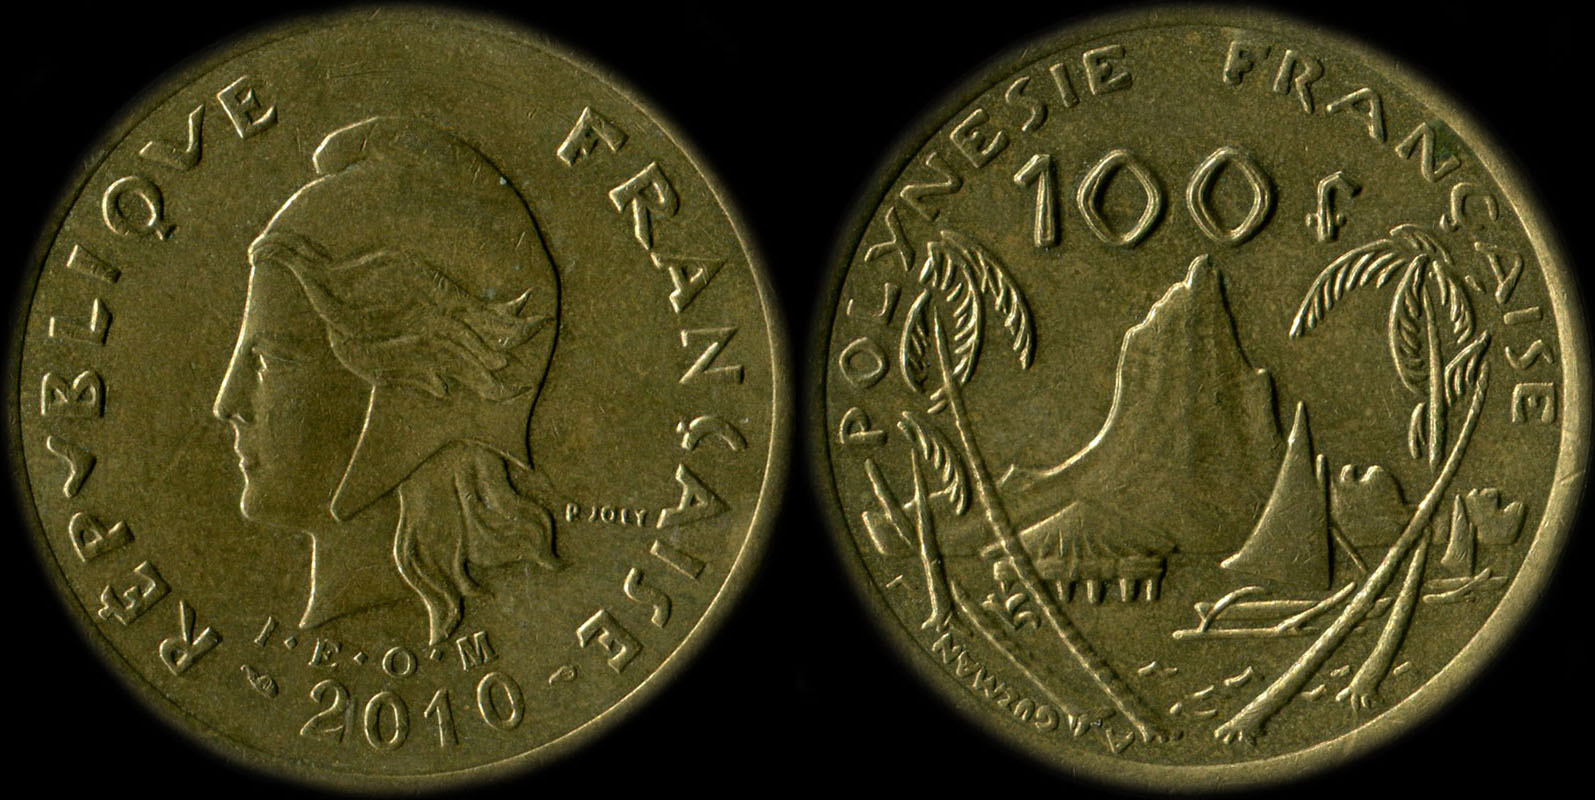 Pièce de 100 francs 2010 - I.E.O.M. Polynésie française